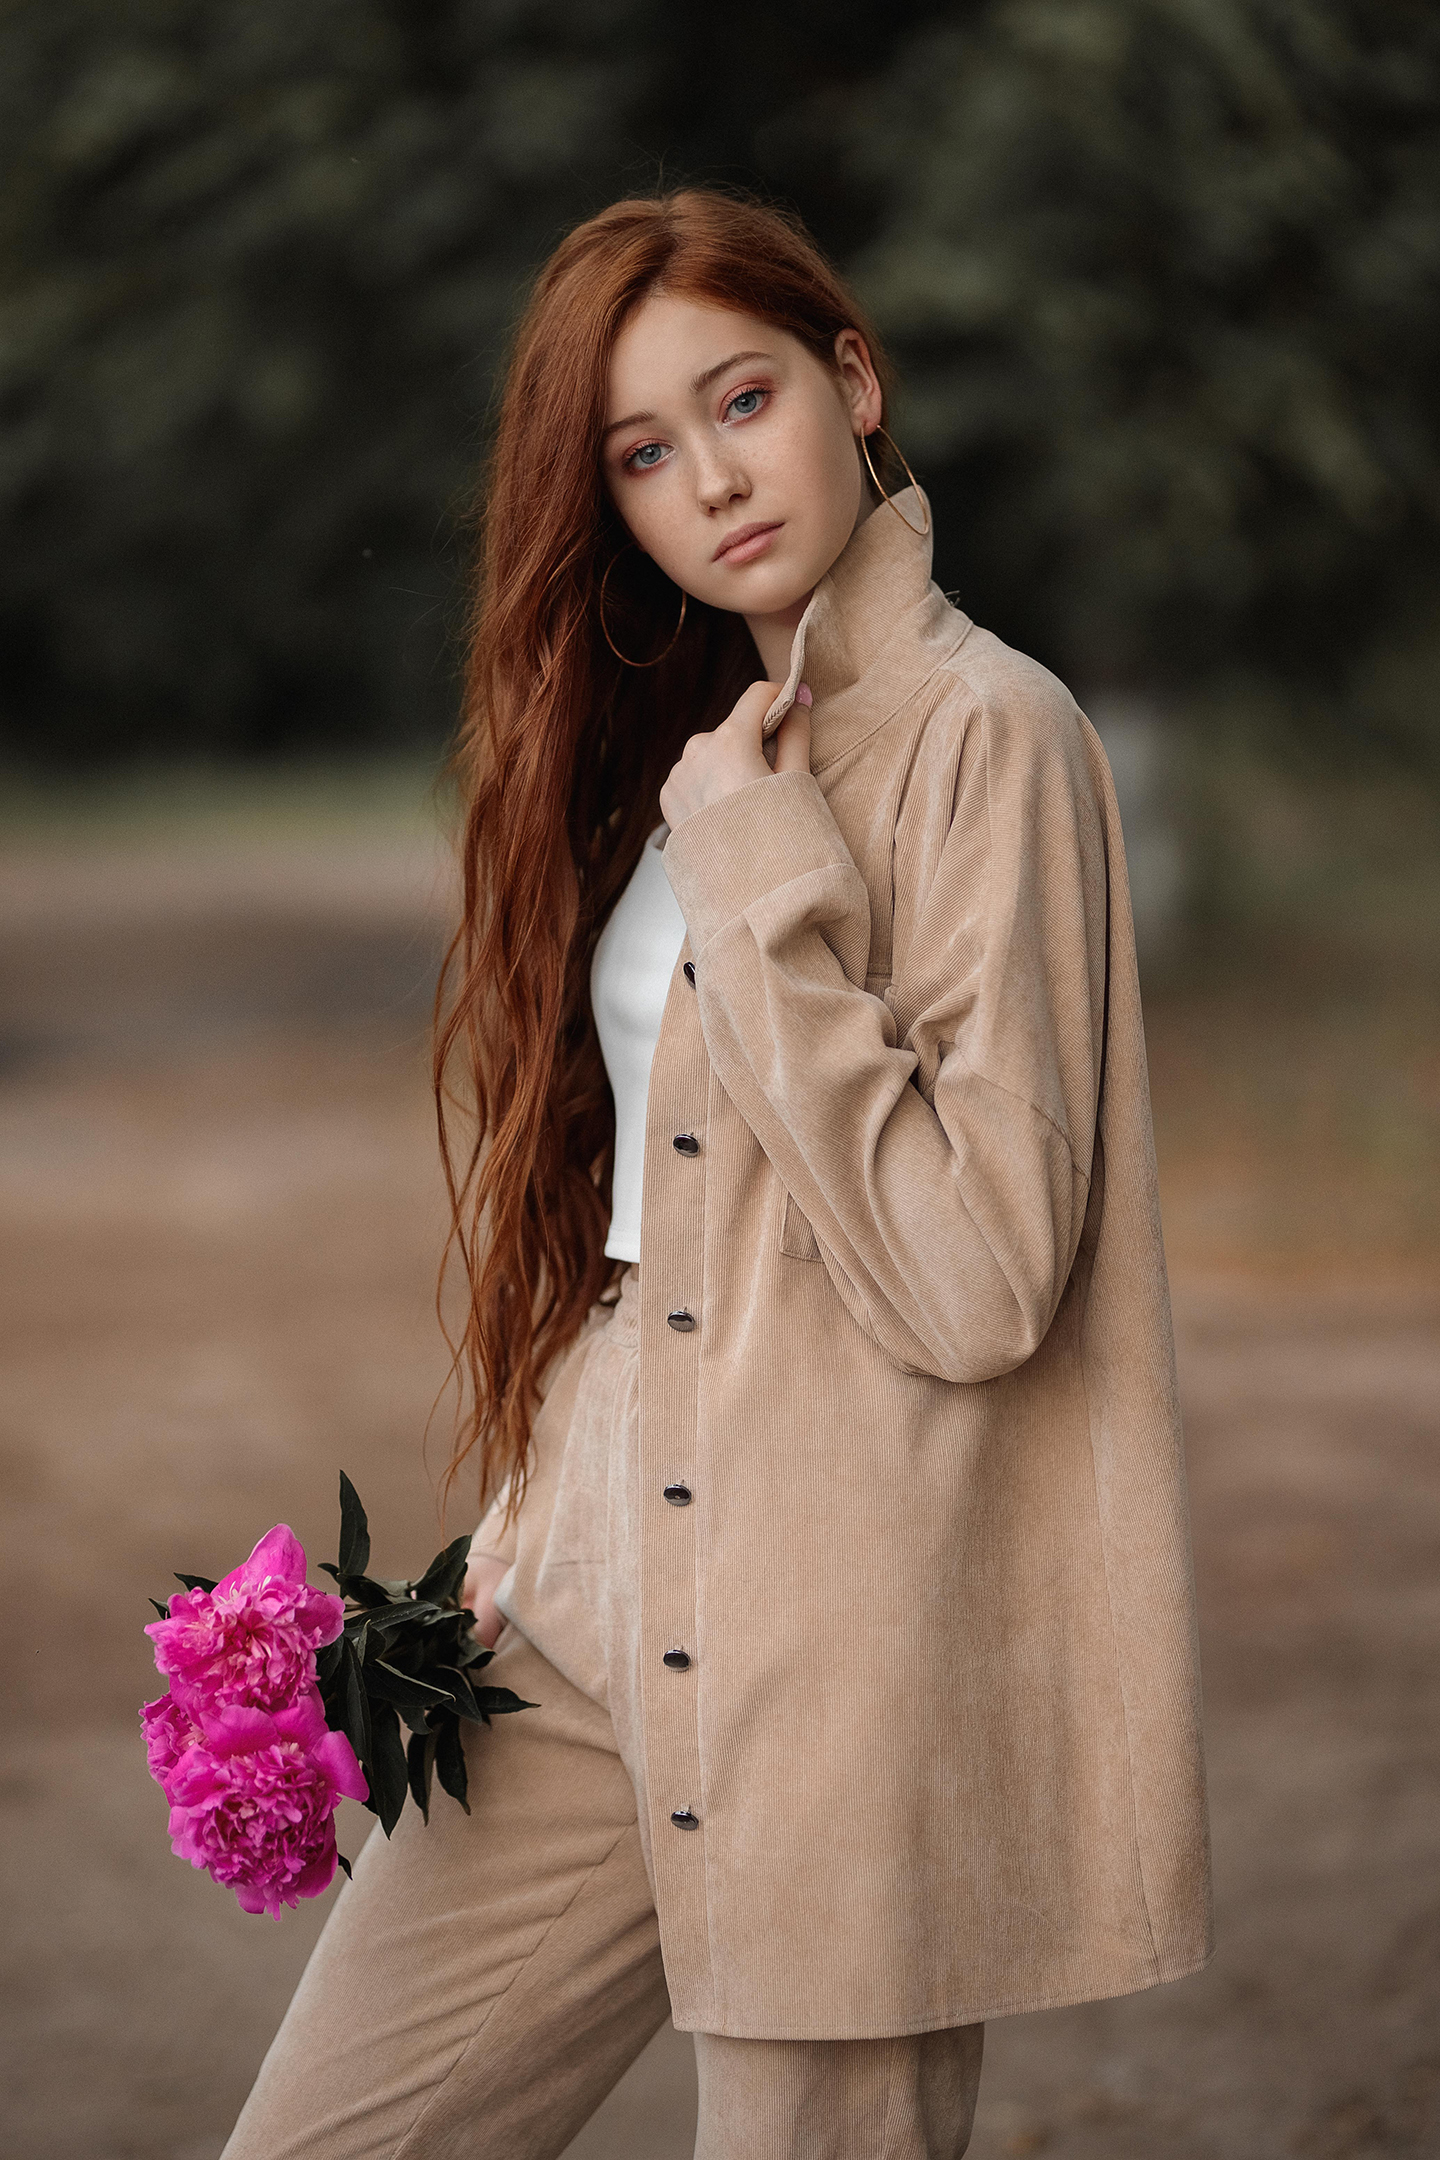 Vladimir Vasilev Women Redhead Long Hair Brown Clothing Flowers Makeup Pink Depth Of Field Gray Eyes 1440x2160